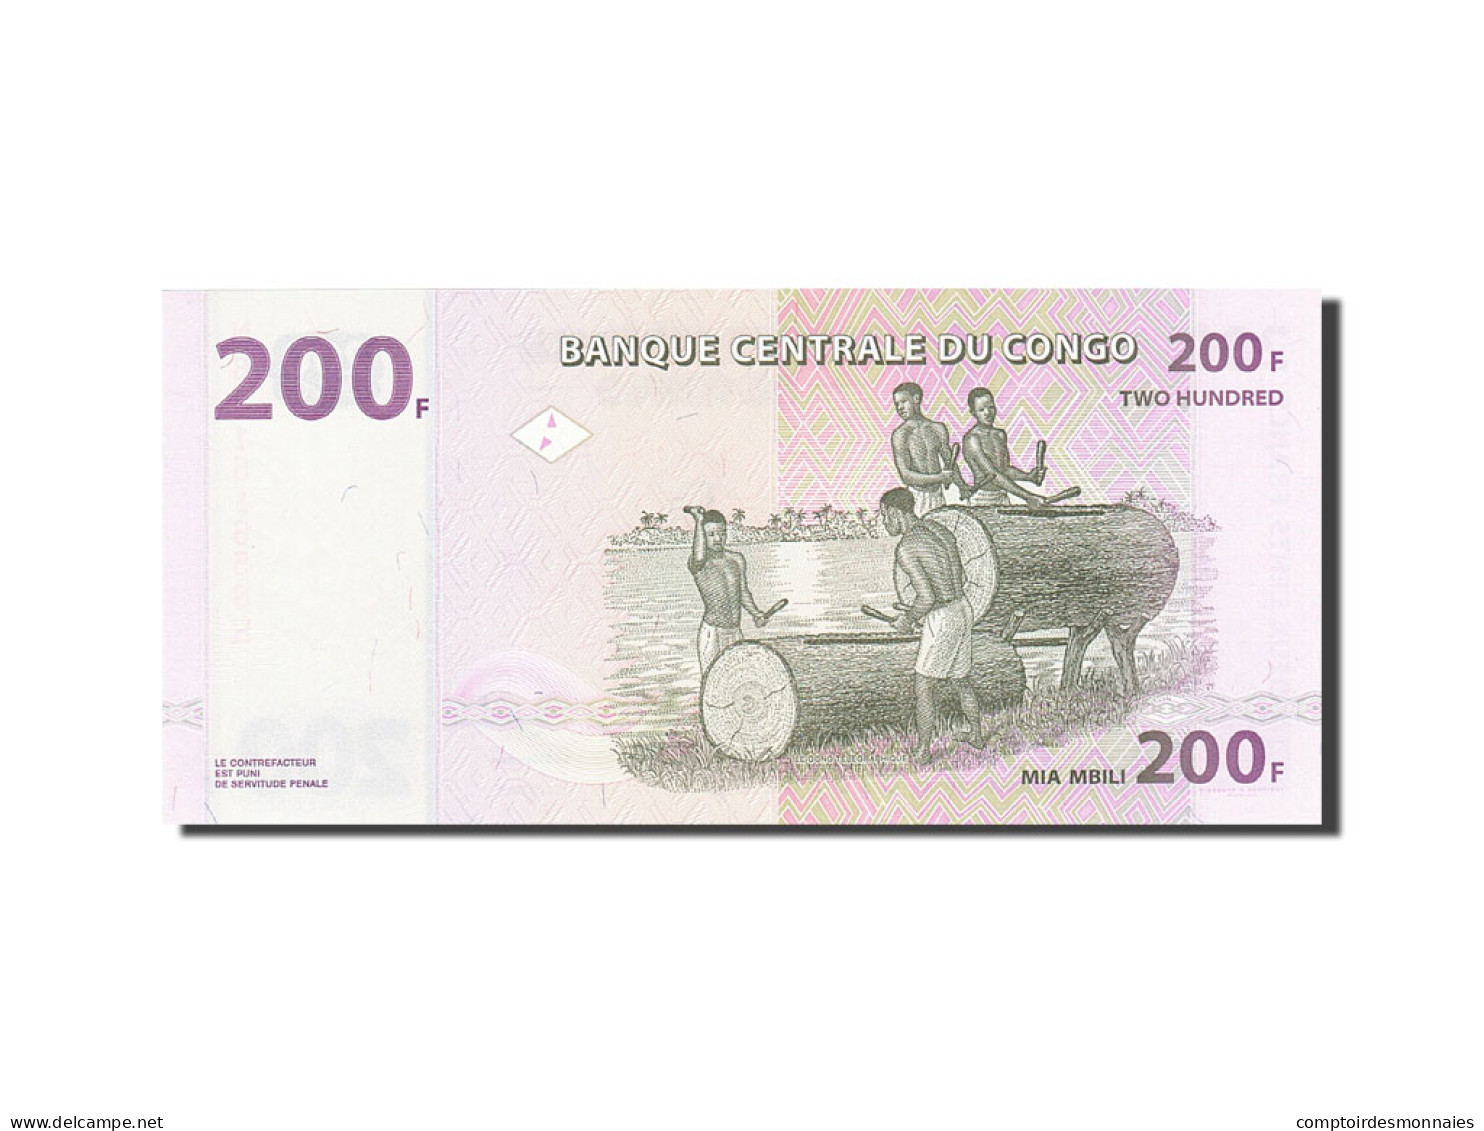 Billet, Congo Democratic Republic, 200 Francs, 2007, 2007-07-31, KM:99a, NEUF - République Démocratique Du Congo & Zaïre